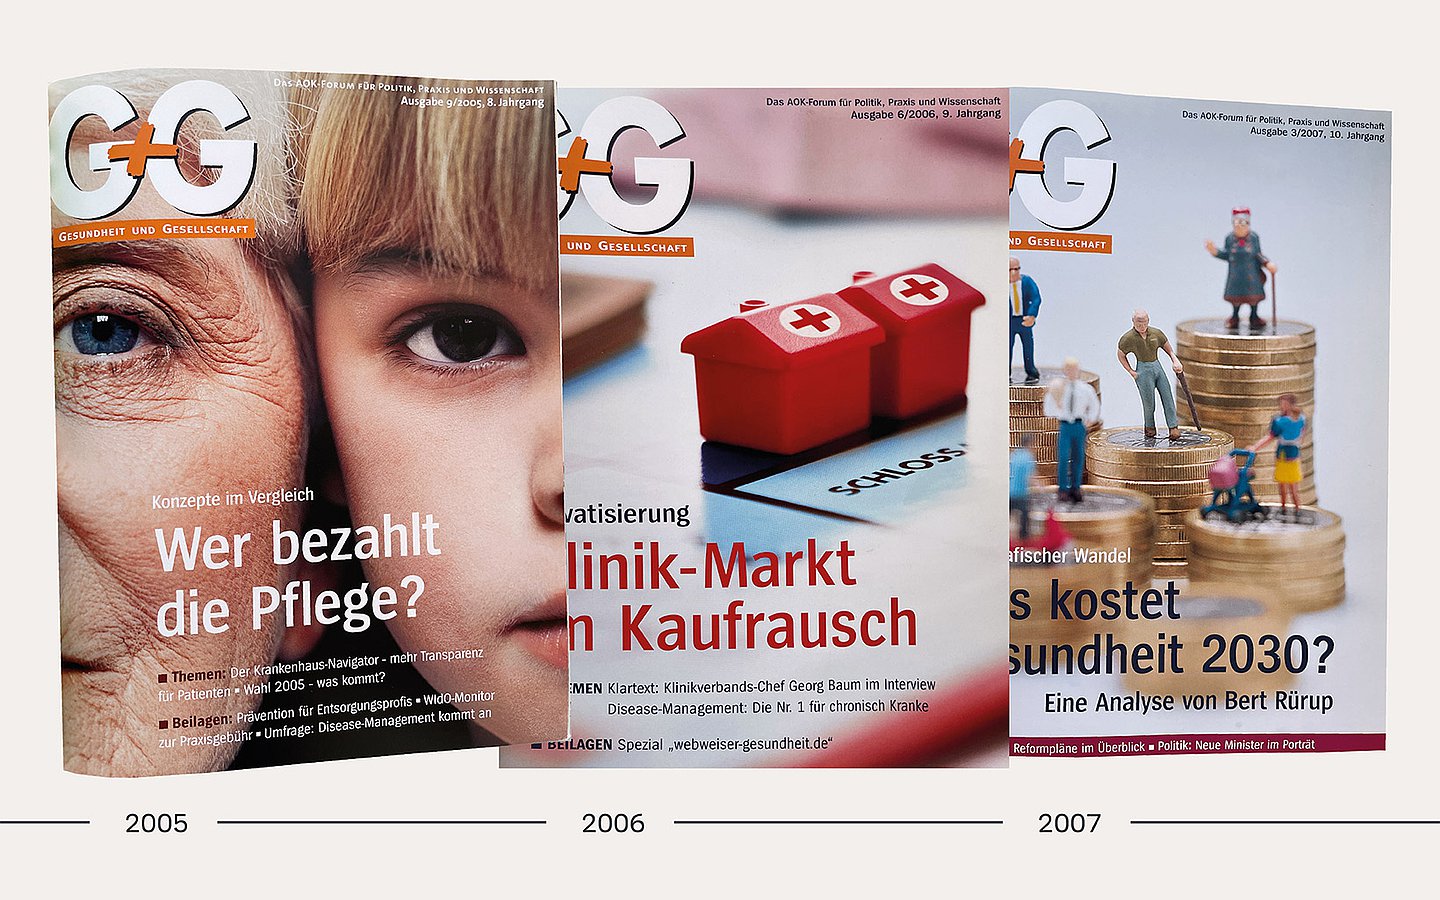 Foto: Titelbilder der G+G aus den Jahren 2005 bis 2007